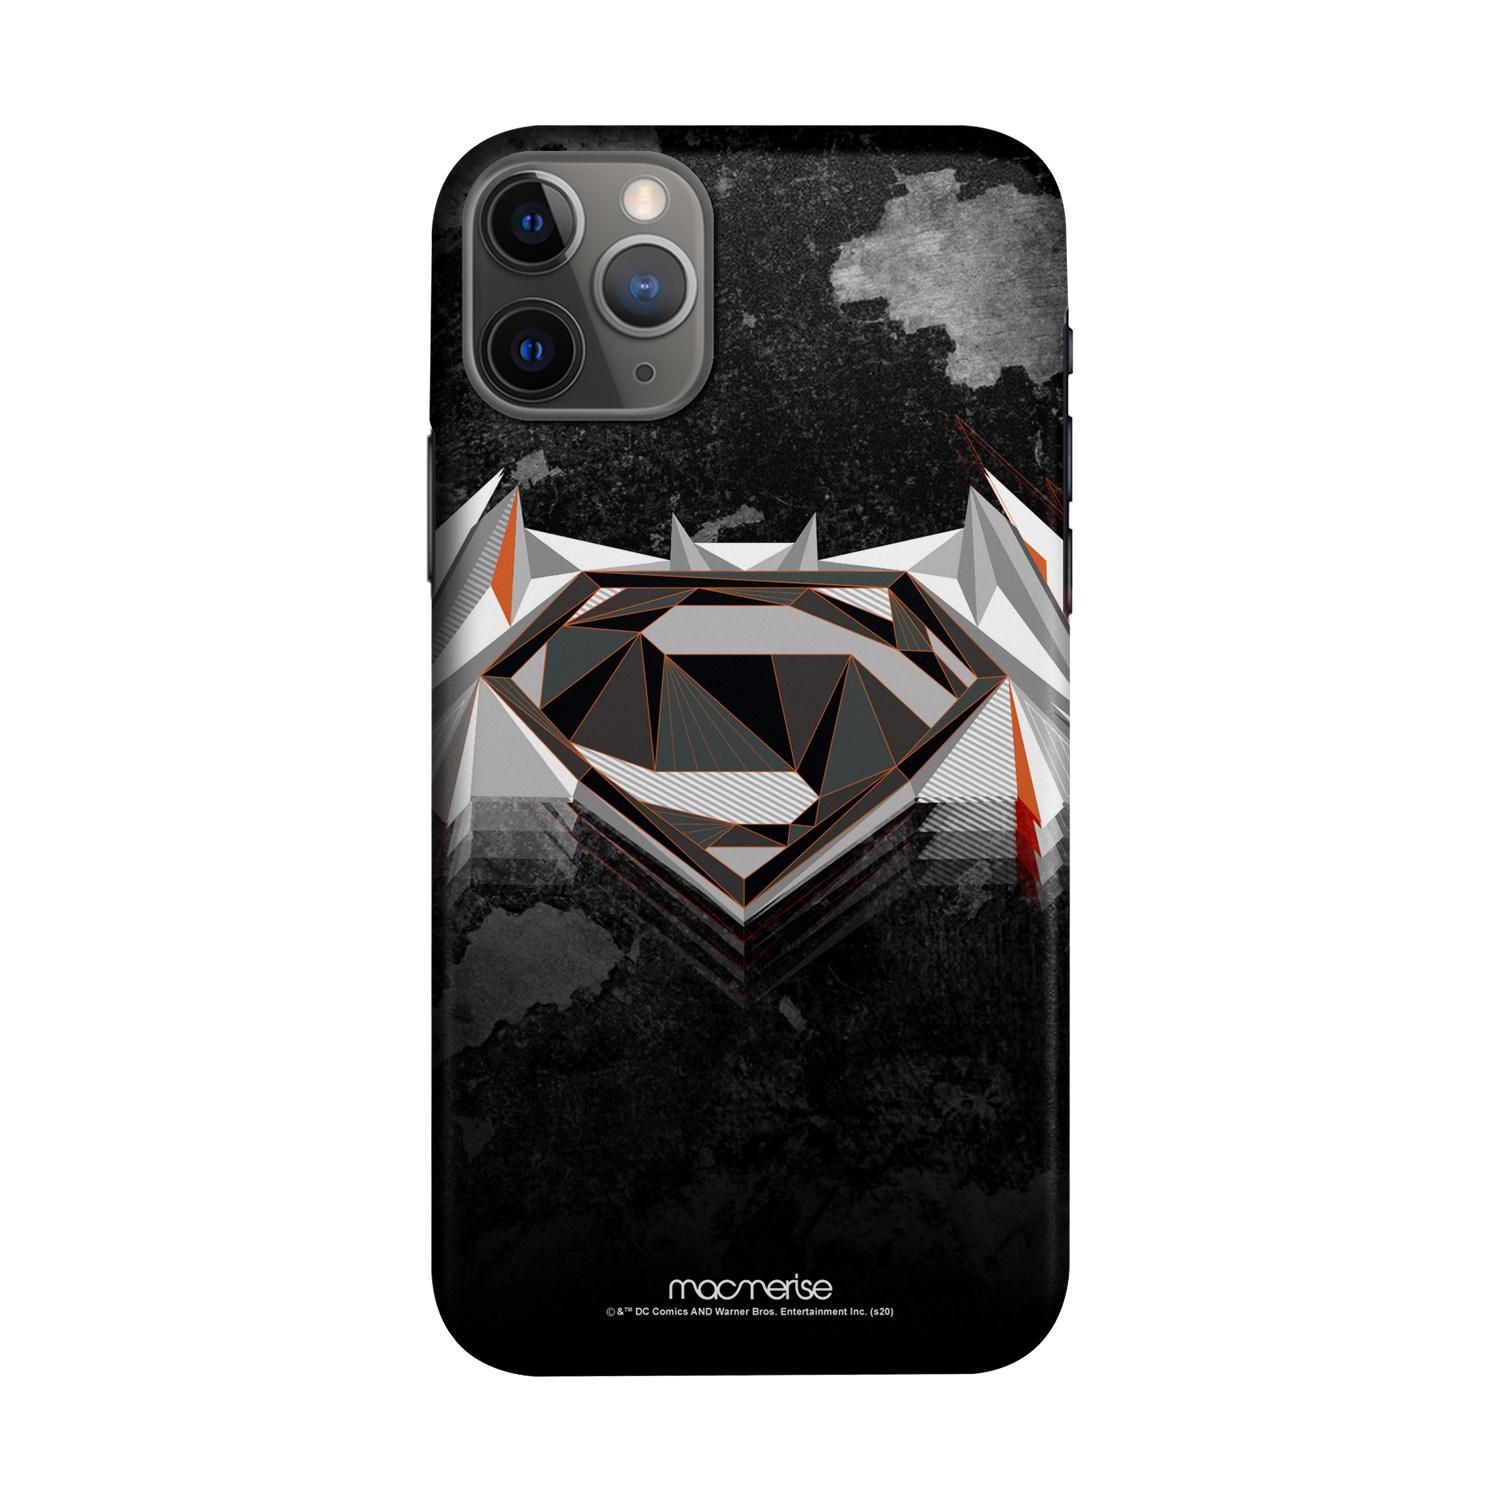 Buy Men of Steel - Sleek Phone Case for iPhone 11 Pro Max Online